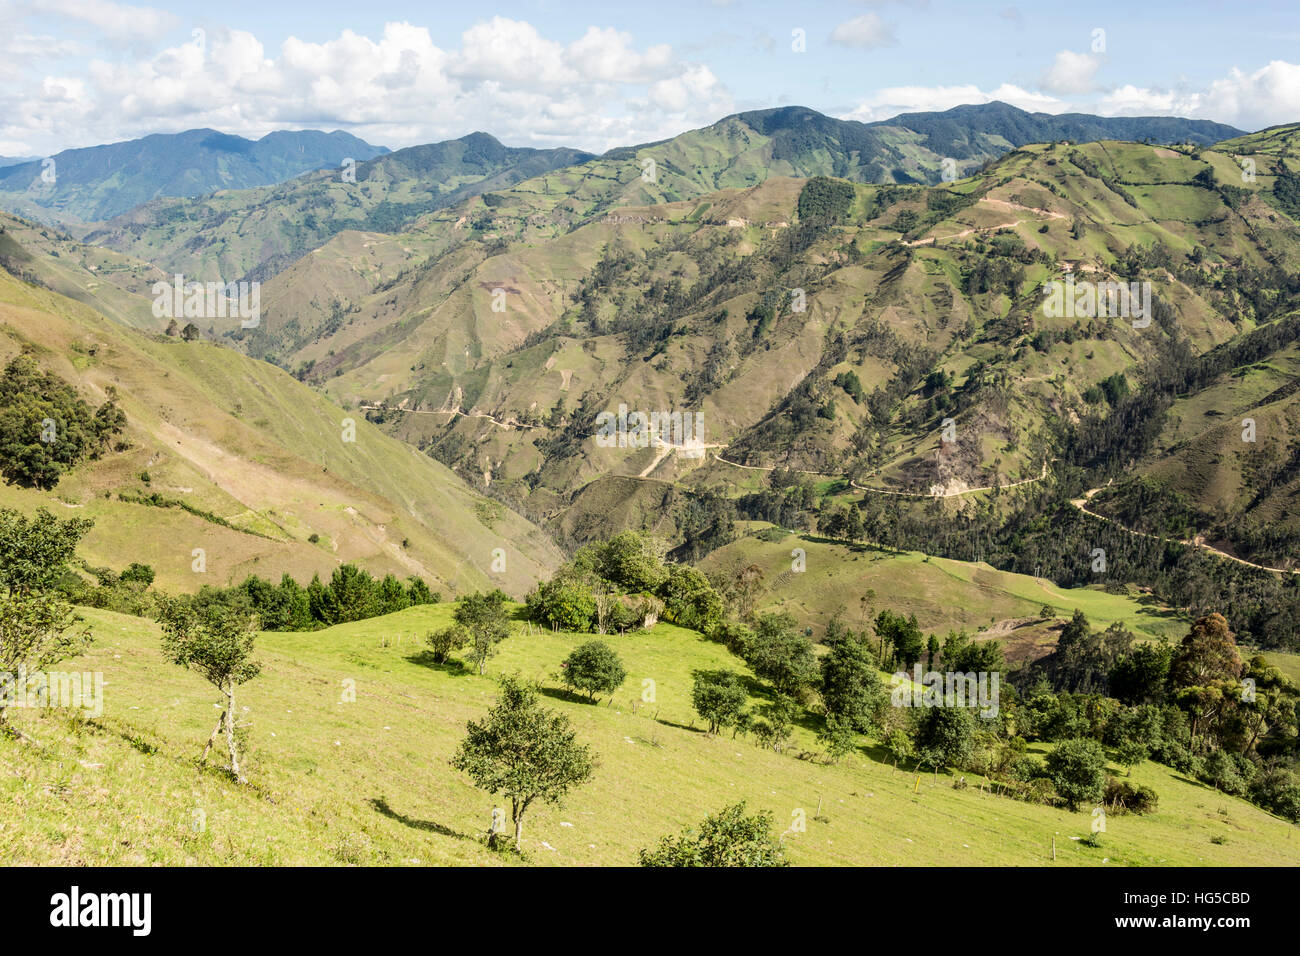 Southern highlands near Saraguro, Ecuador, South America Stock Photo